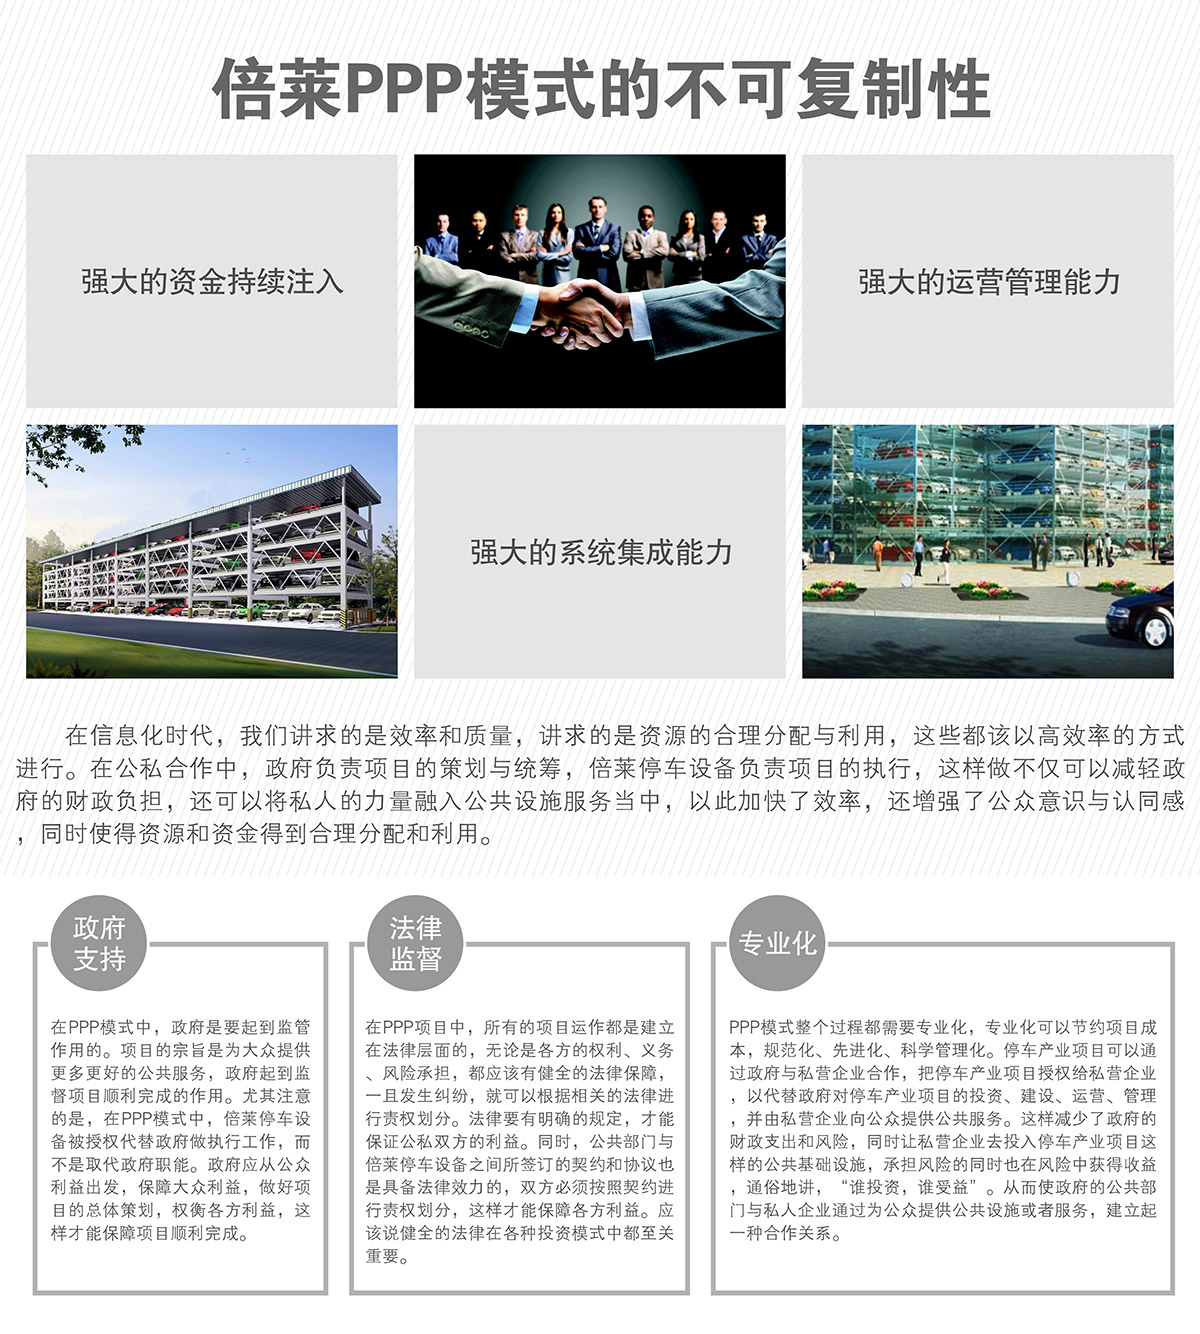 重庆倍莱停车设备租赁PPP模式的不可复制性.jpg